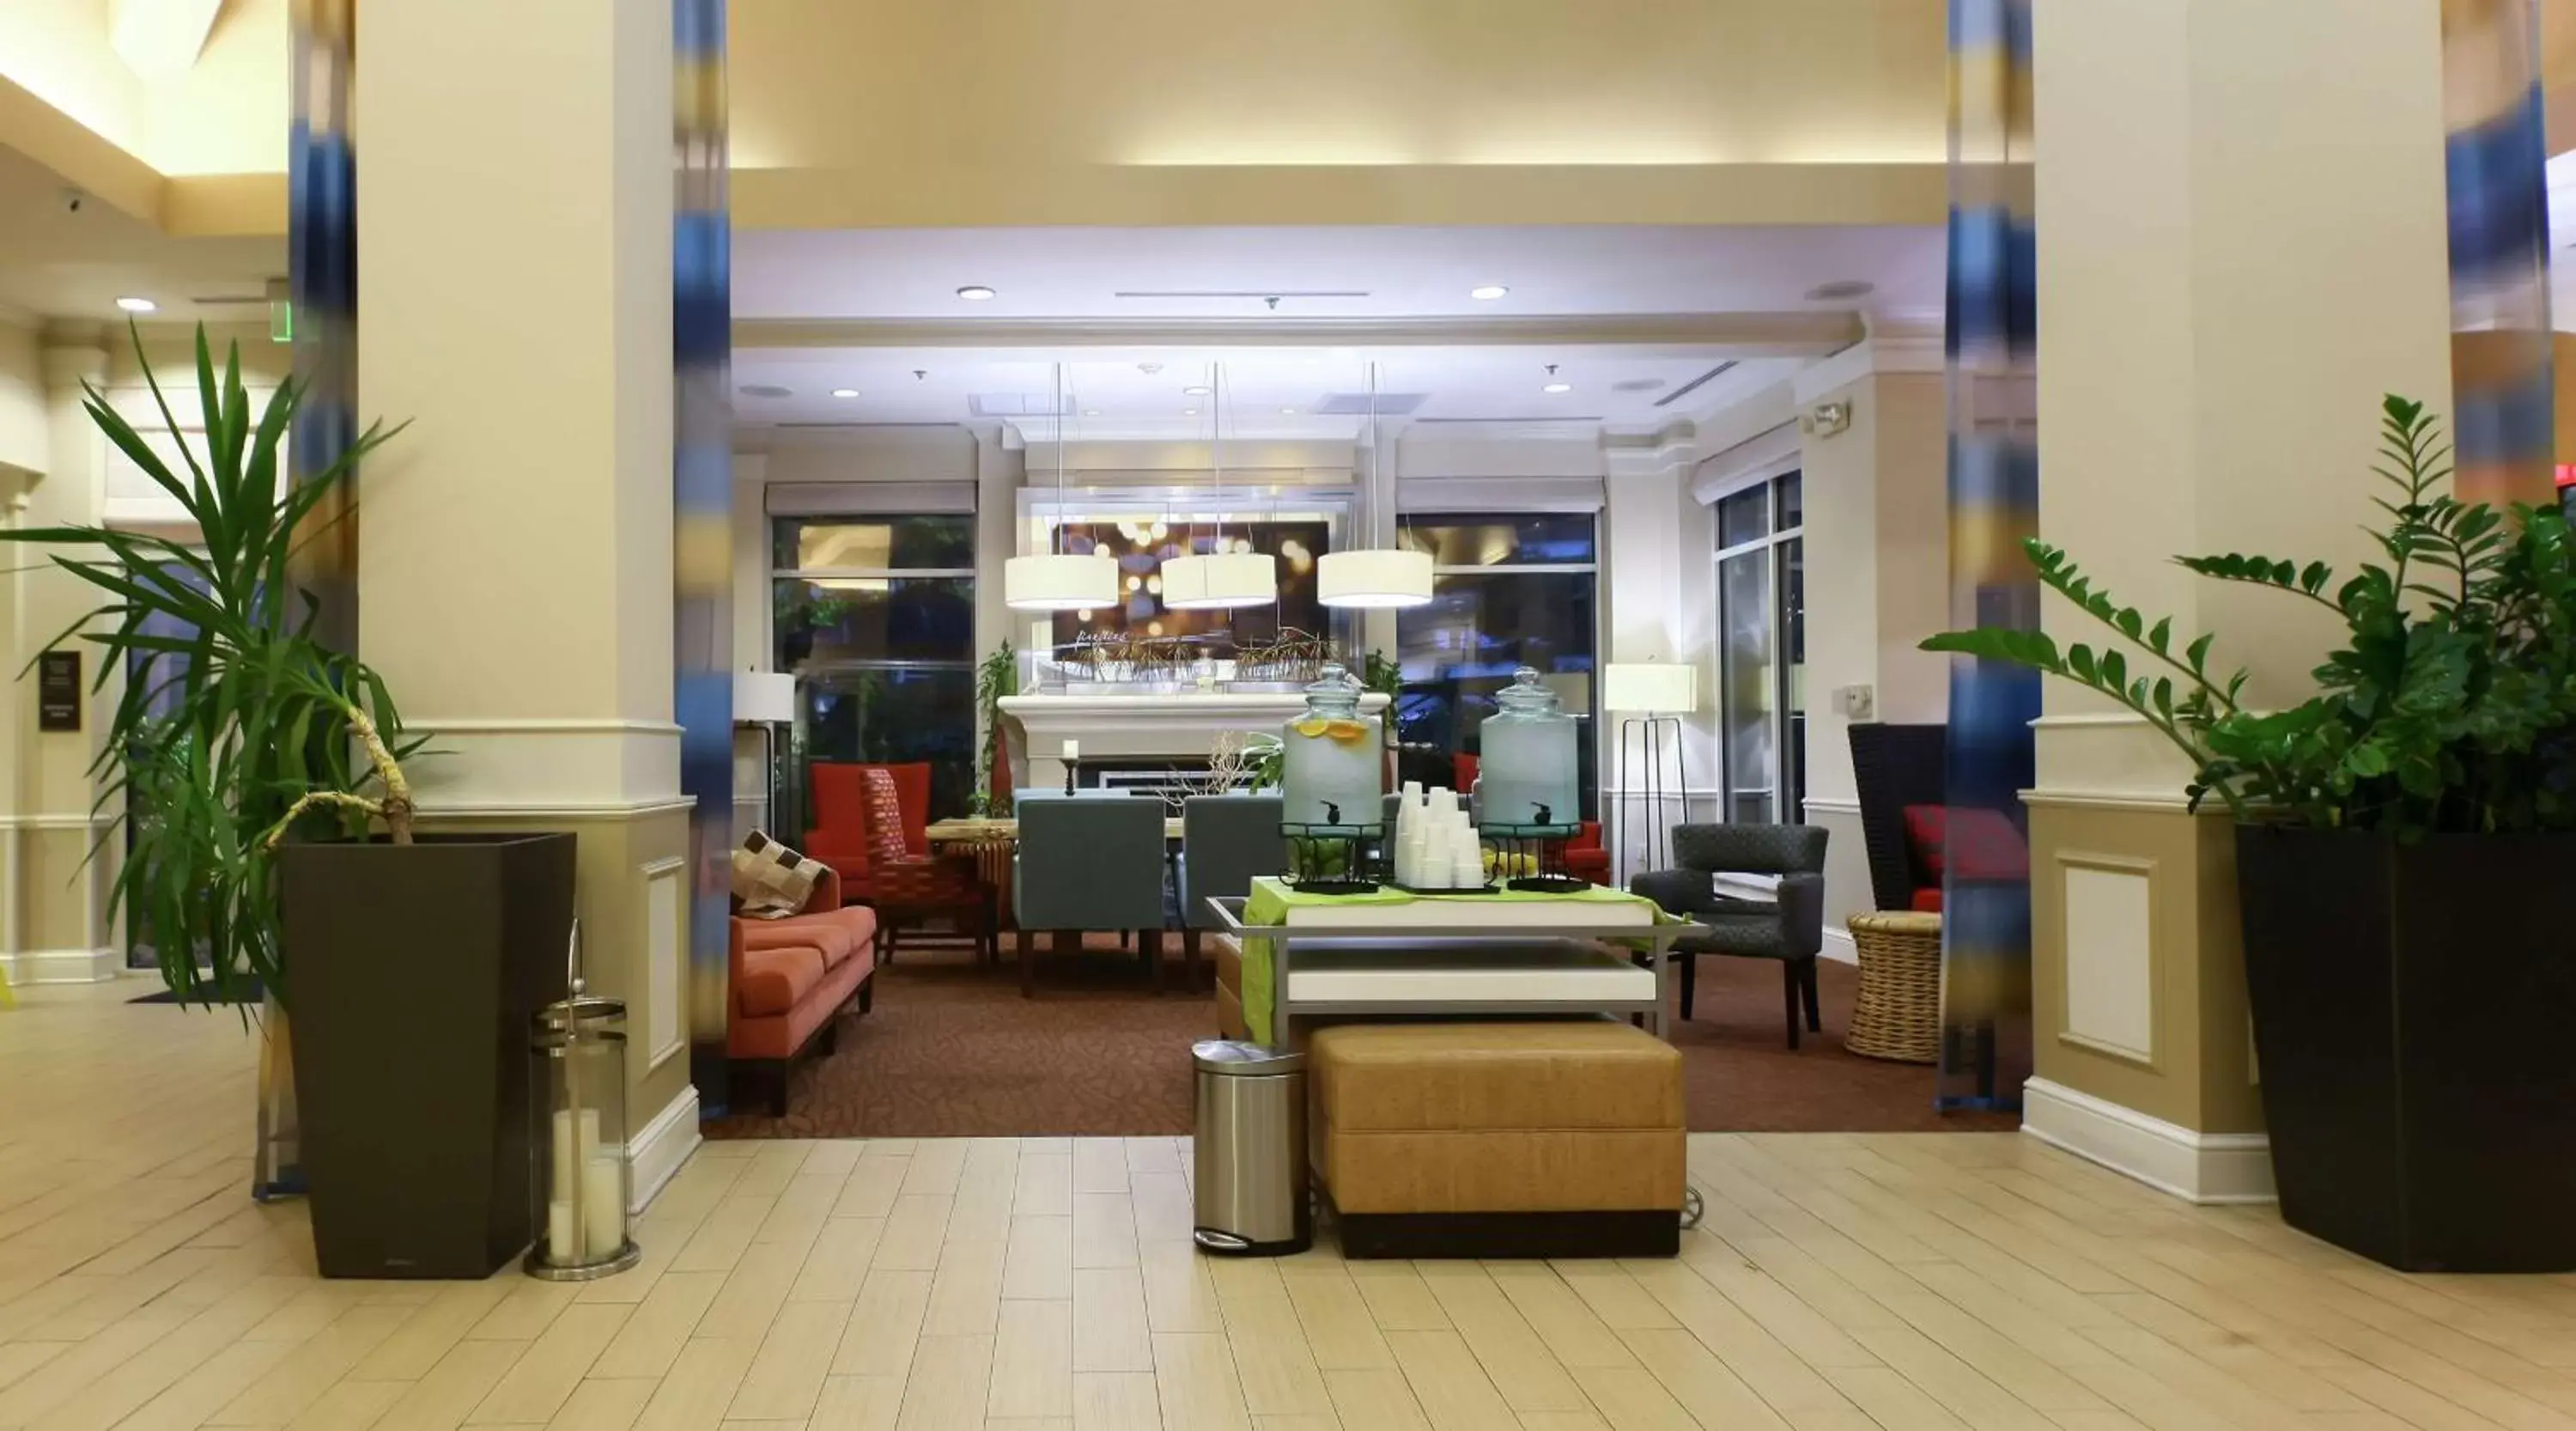 Lobby or reception in Hilton Garden Inn Secaucus/Meadowlands